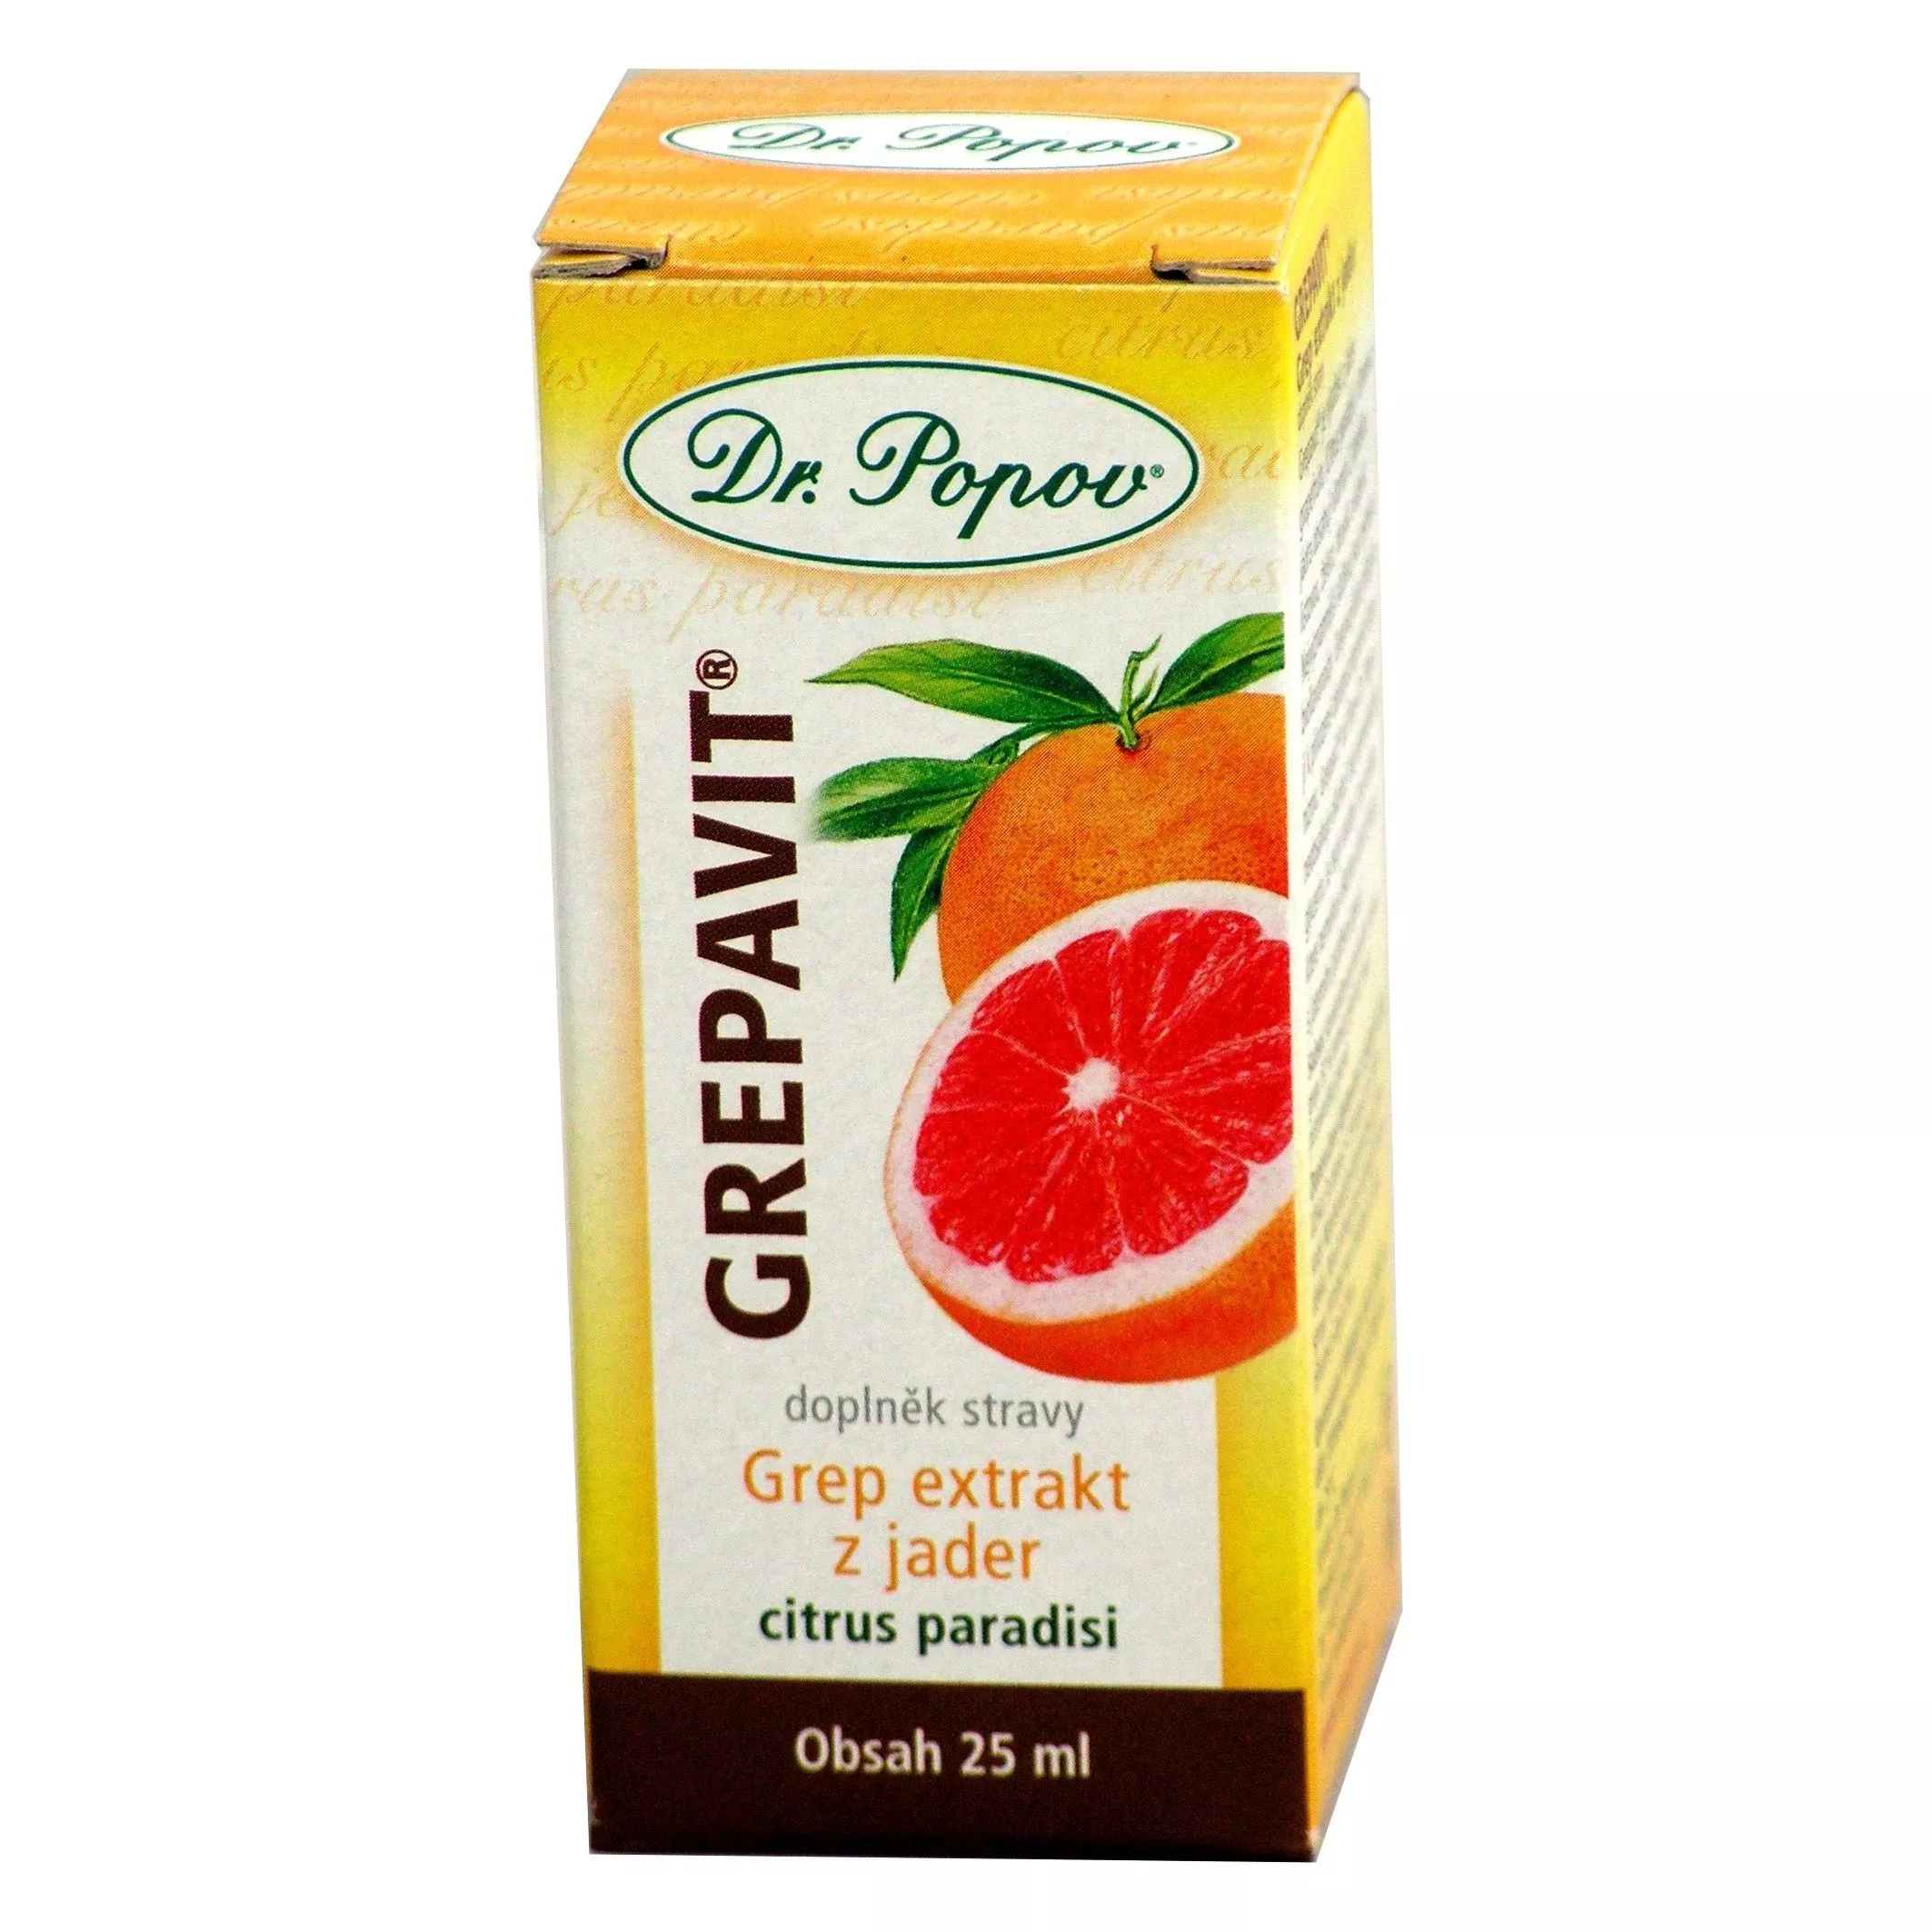 GREPAVIT® – grep extrakt z jader 25ml Dr. Popov